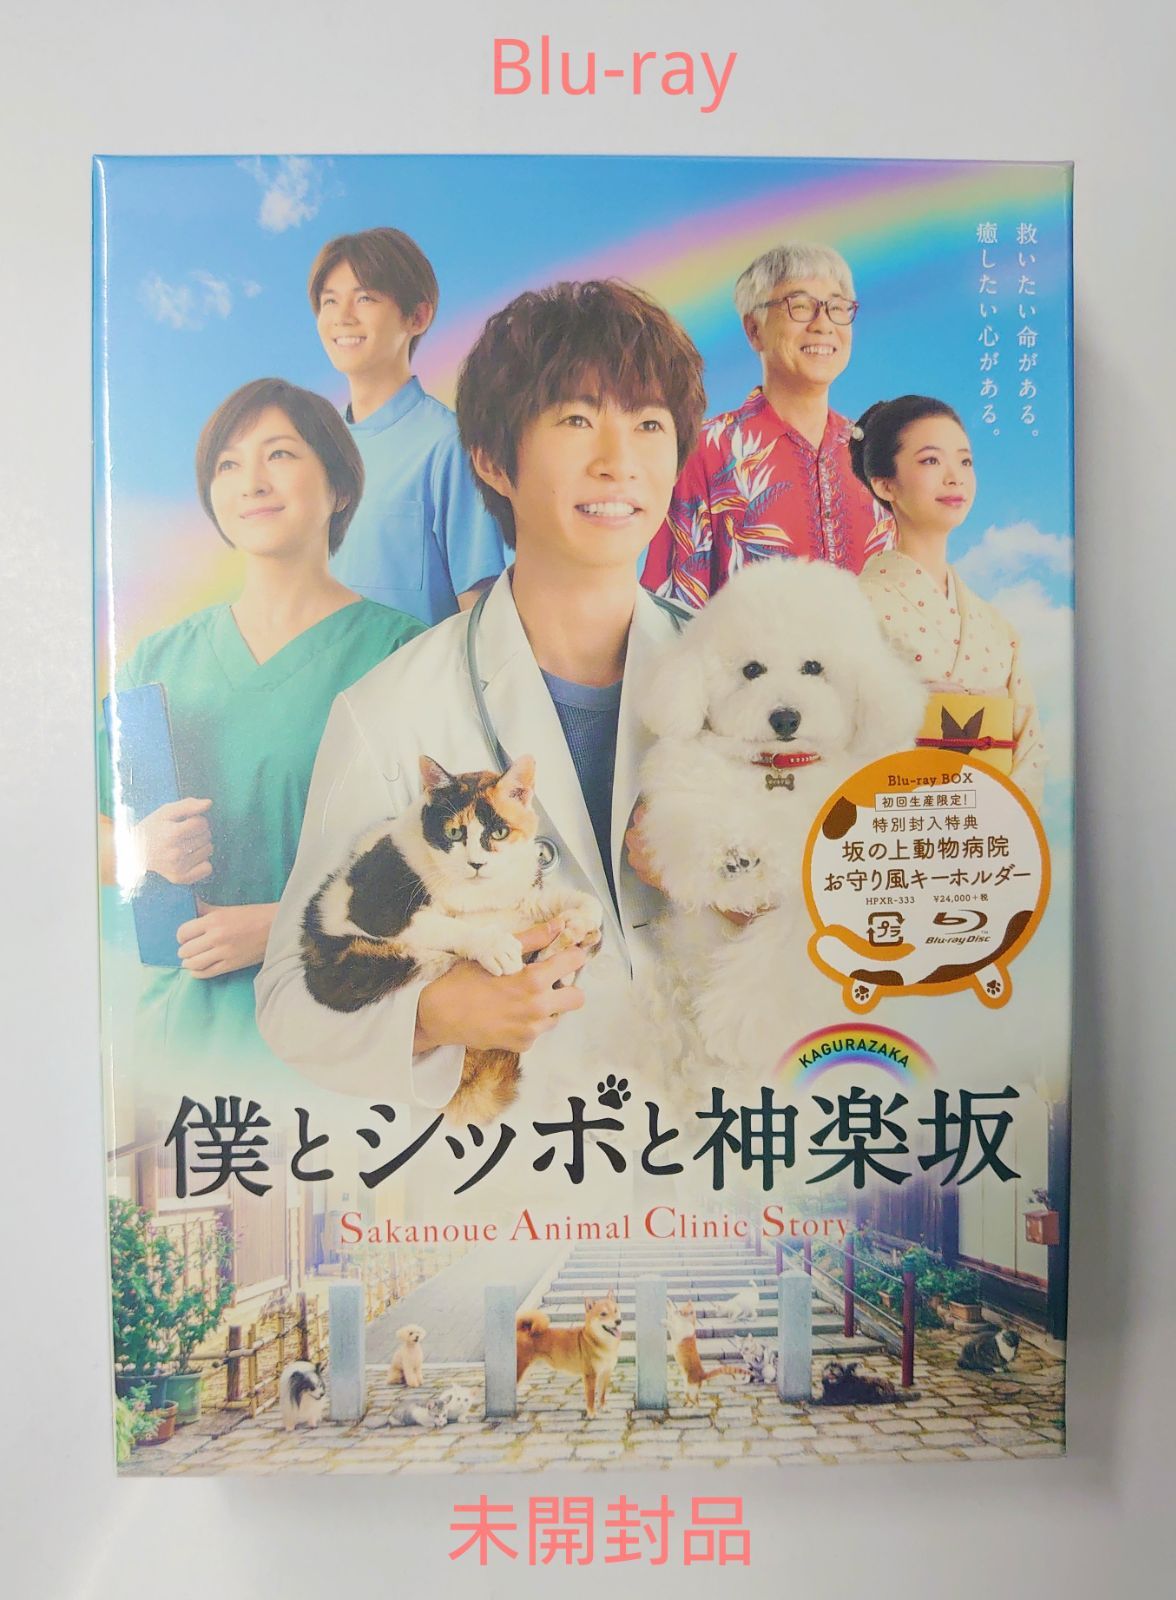 僕とシッポと神楽坂 Blu-rayBOX (未開封) - メルカリ